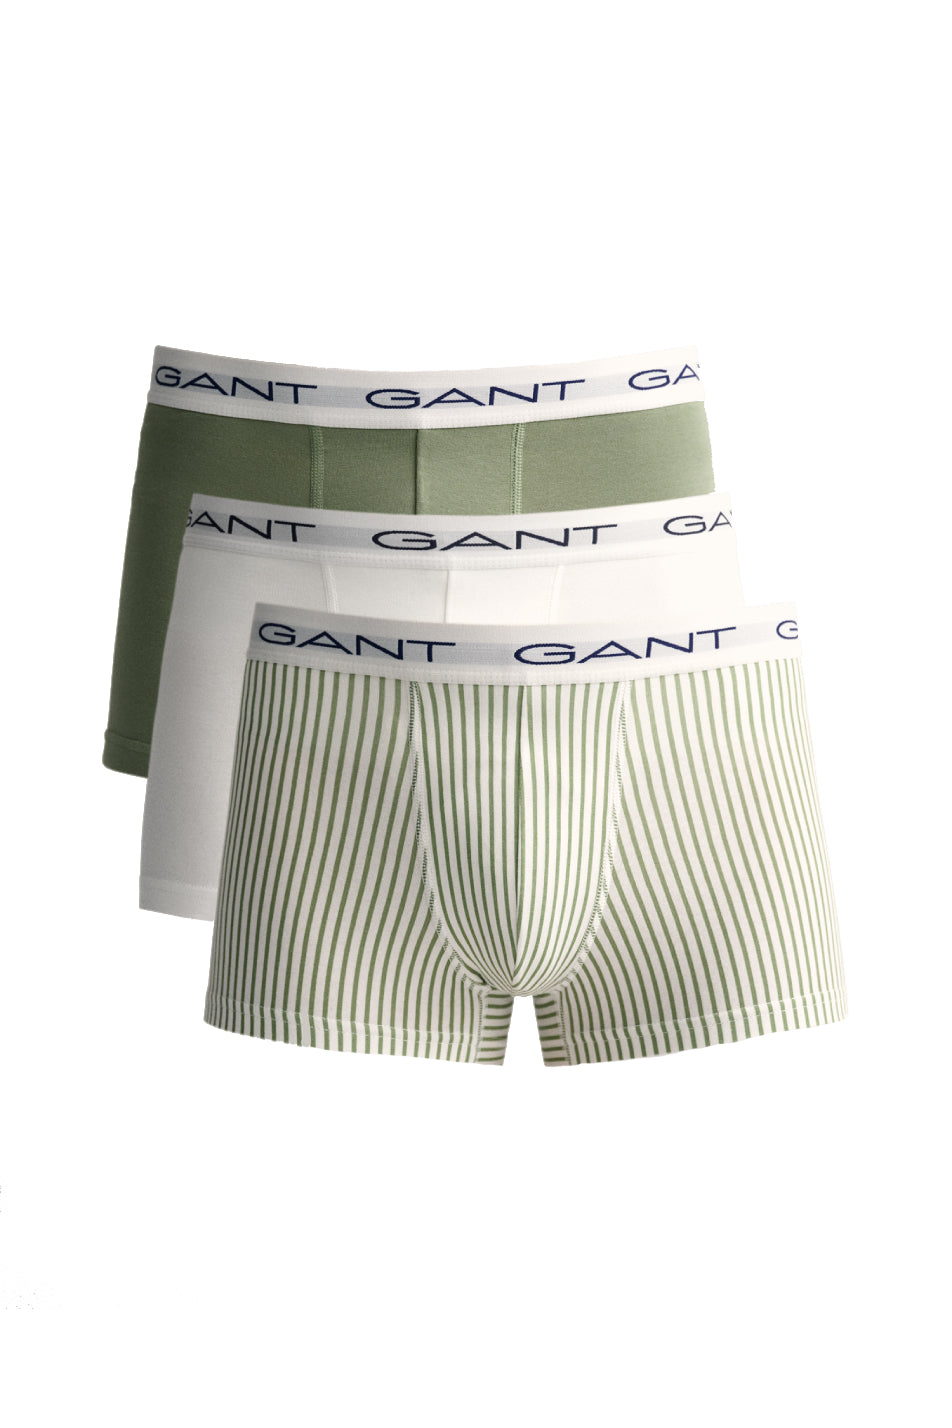 Gant 3 Pack Men's Pinstripe Print Trunk